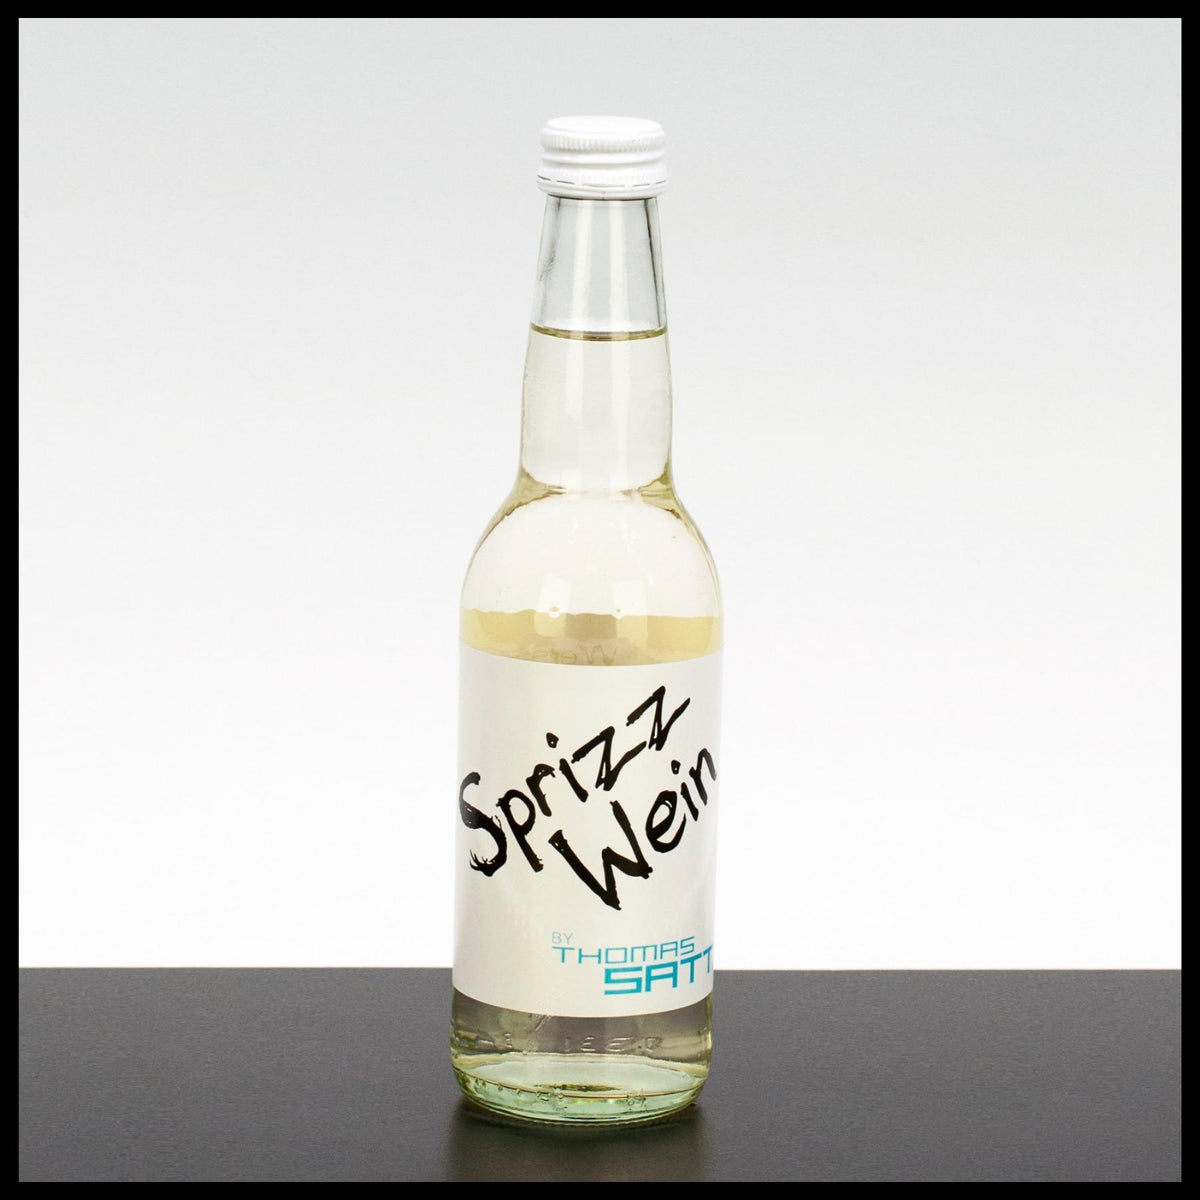 Thomas Sattler Sprizz Wein 0,33L - 5% Vol. - Trinklusiv